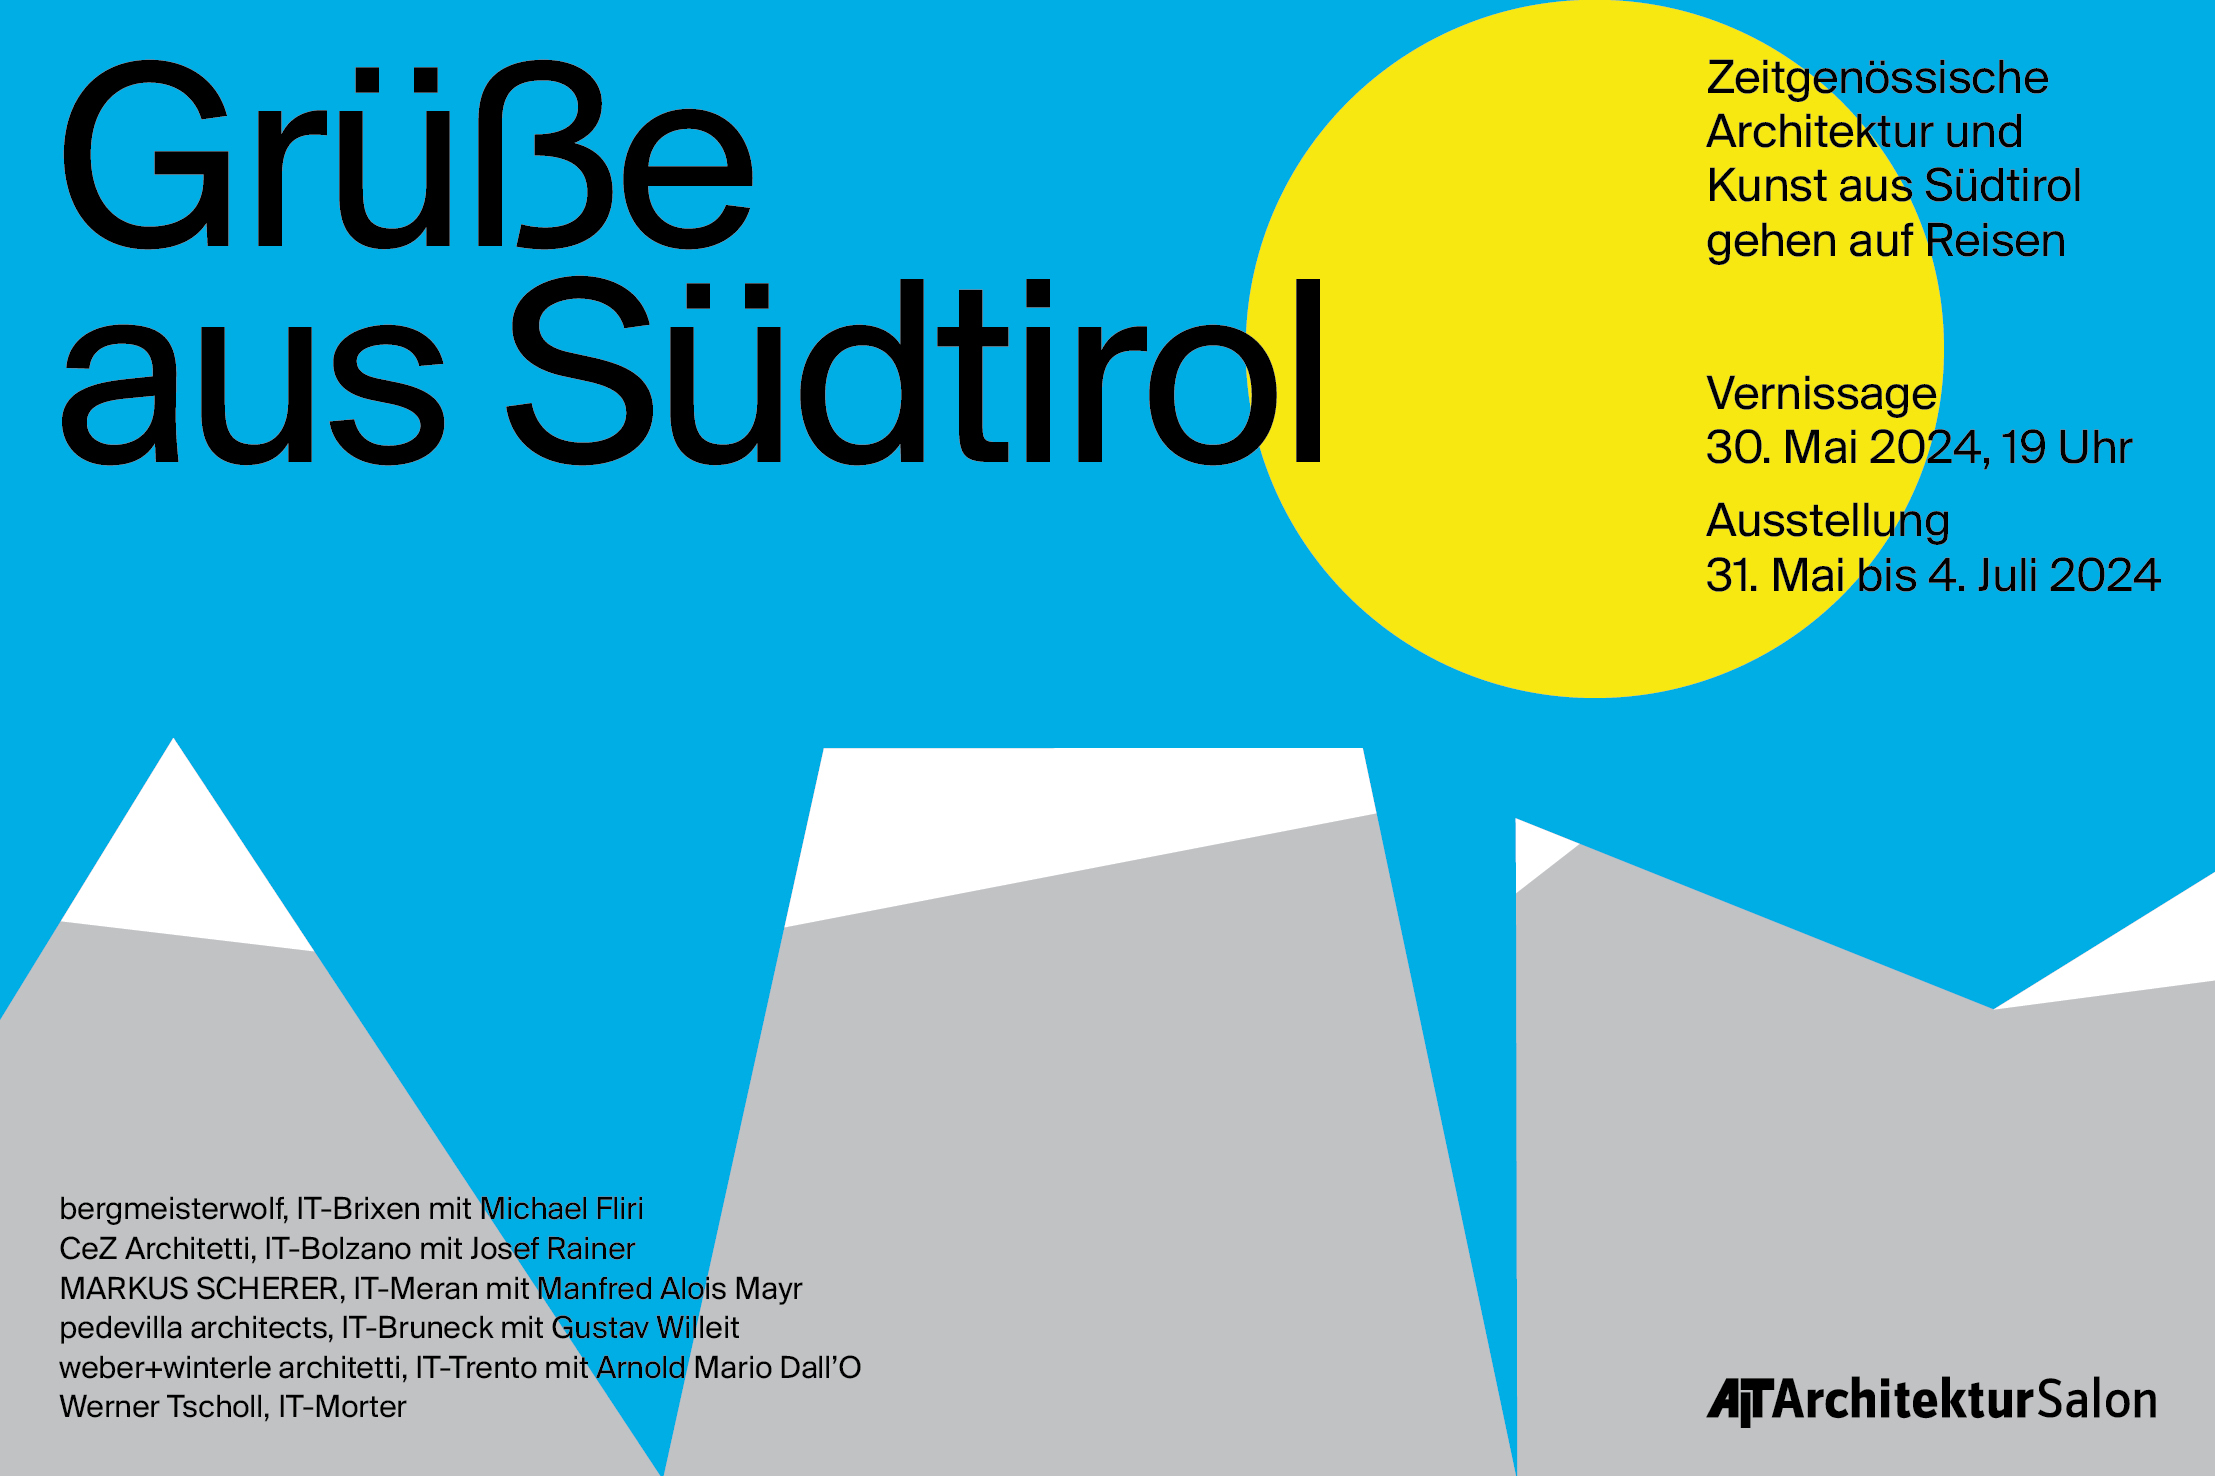 Ausstellung "Grüße aus Südtirol! - Zeitgenössische Architektur und Kunst aus Südtirol gehen auf Reisen" - im AIT-ArchitekturSalon Hamburg